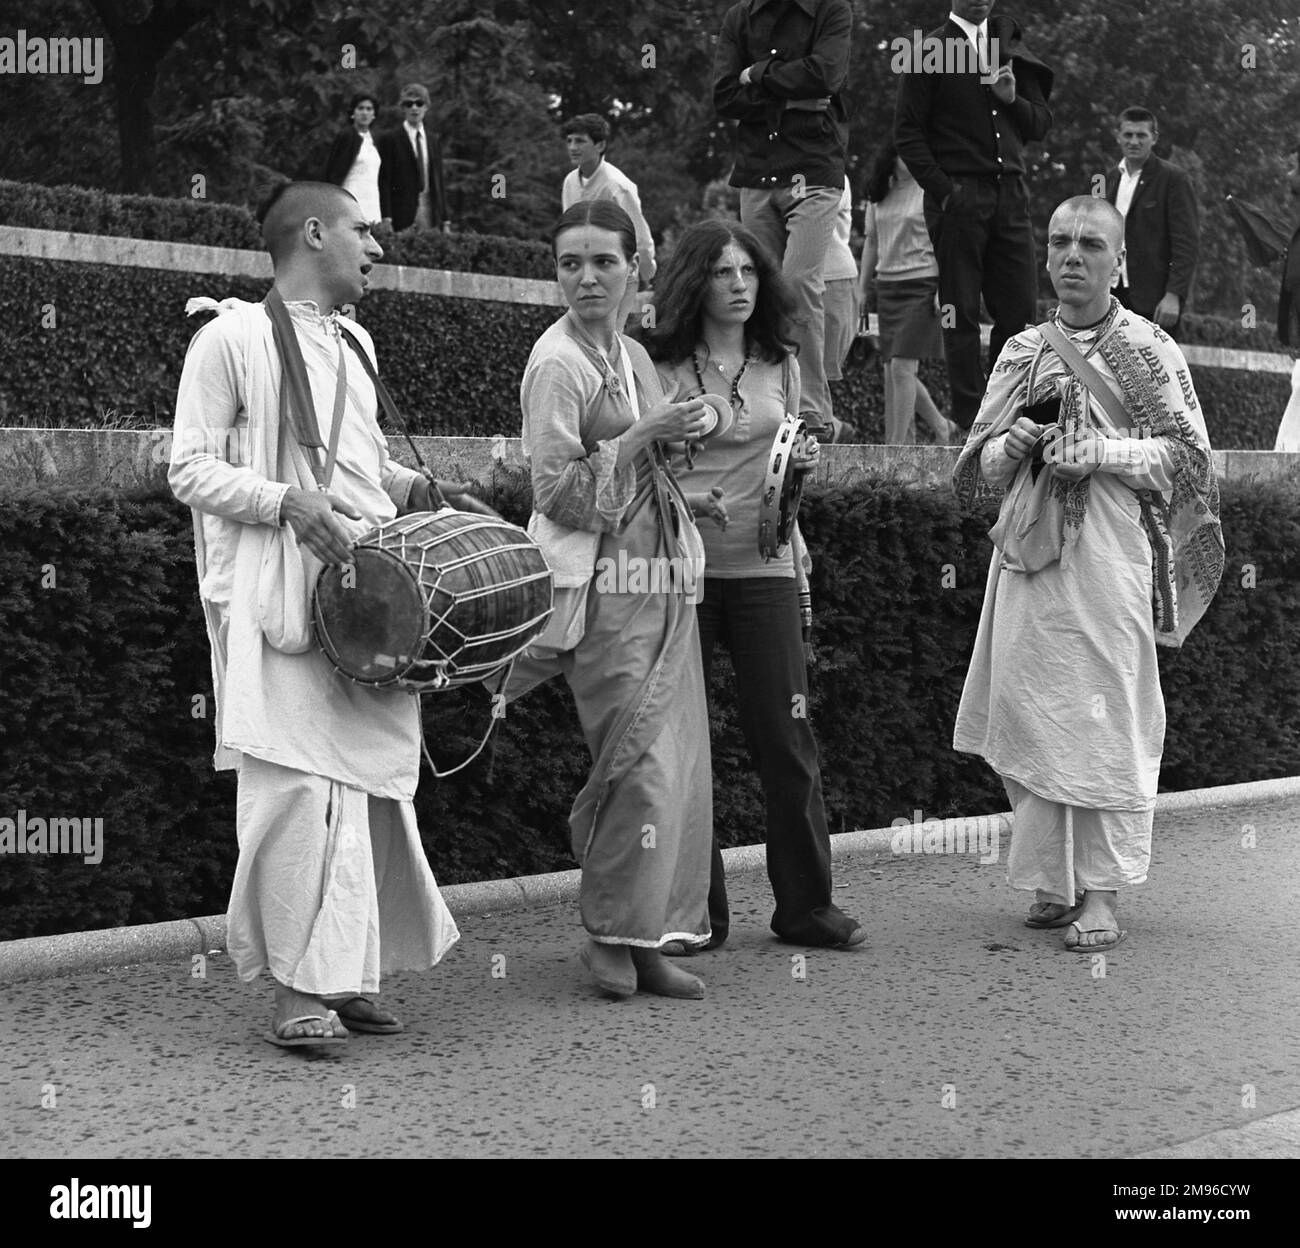 Membri della setta Radha Krishna, suonando i loro strumenti su una strada parigina. Foto Stock